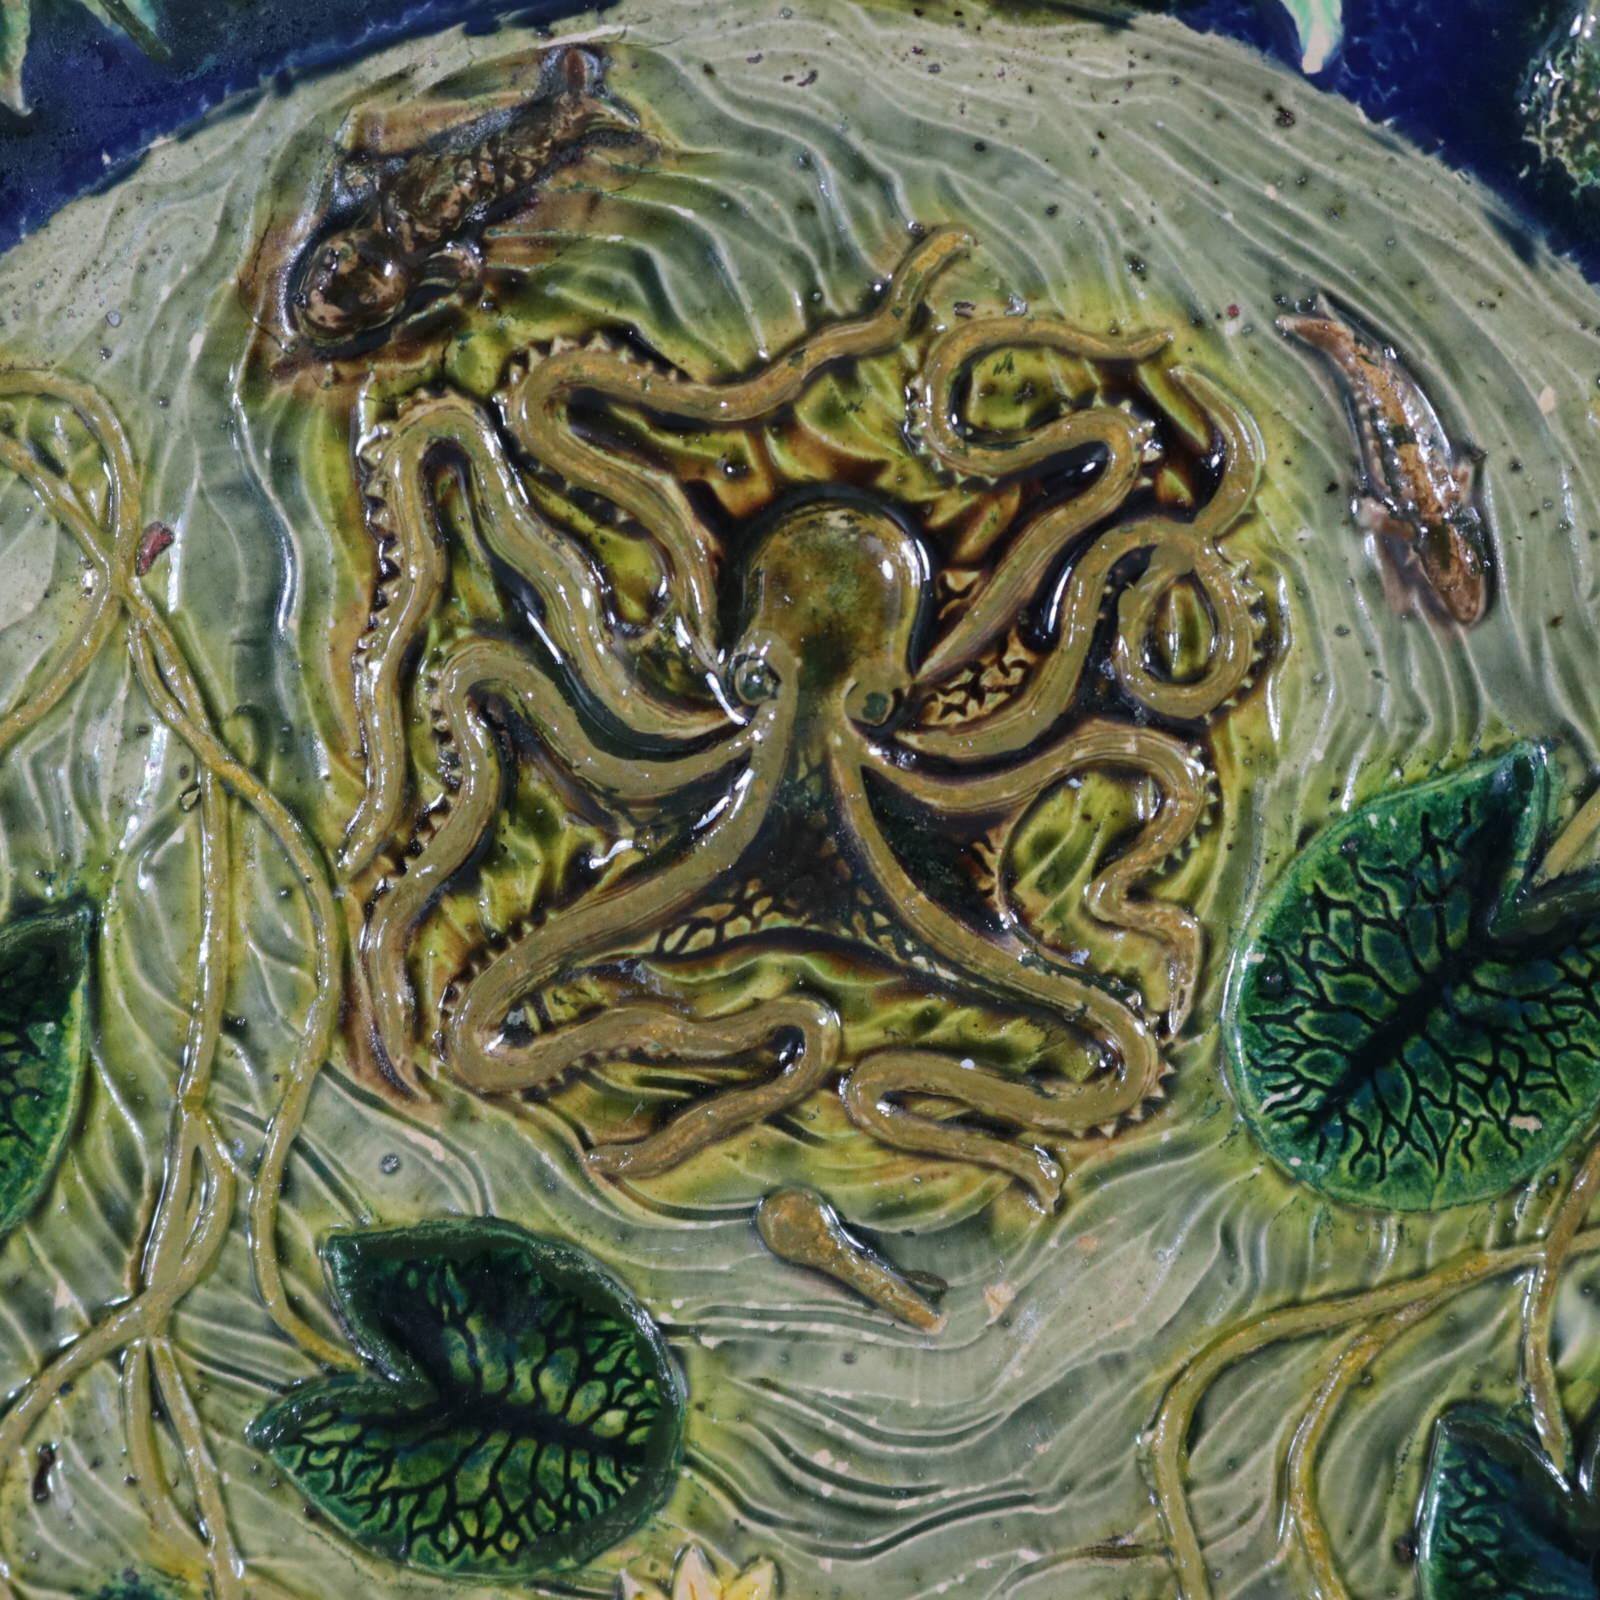 Assiette non identifiée en majolique française de Palissy représentant une pieuvre, des tortues, des poissons, des grenouilles, des lézards, des serpents, des poissons et des lys. Coloration : le bleu, le vert et le gris sont prédominants. Porte une